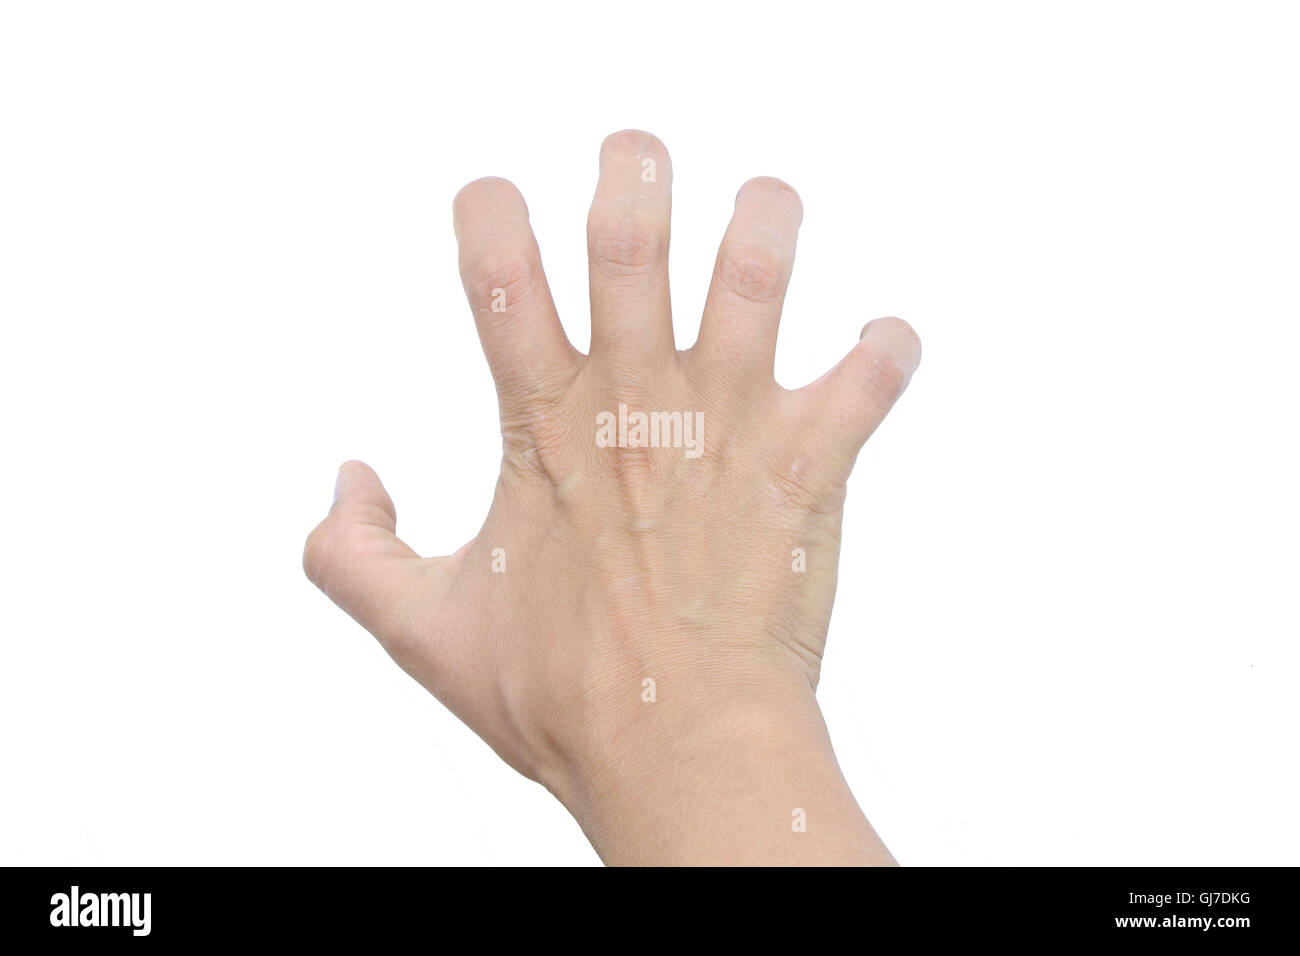 Handbewegung. Punkt fünf, geben fünf, weißer Hintergrund, isoliertes Objekt, krumme Finger, Maniküre fehlen, weiße hand Stockfoto